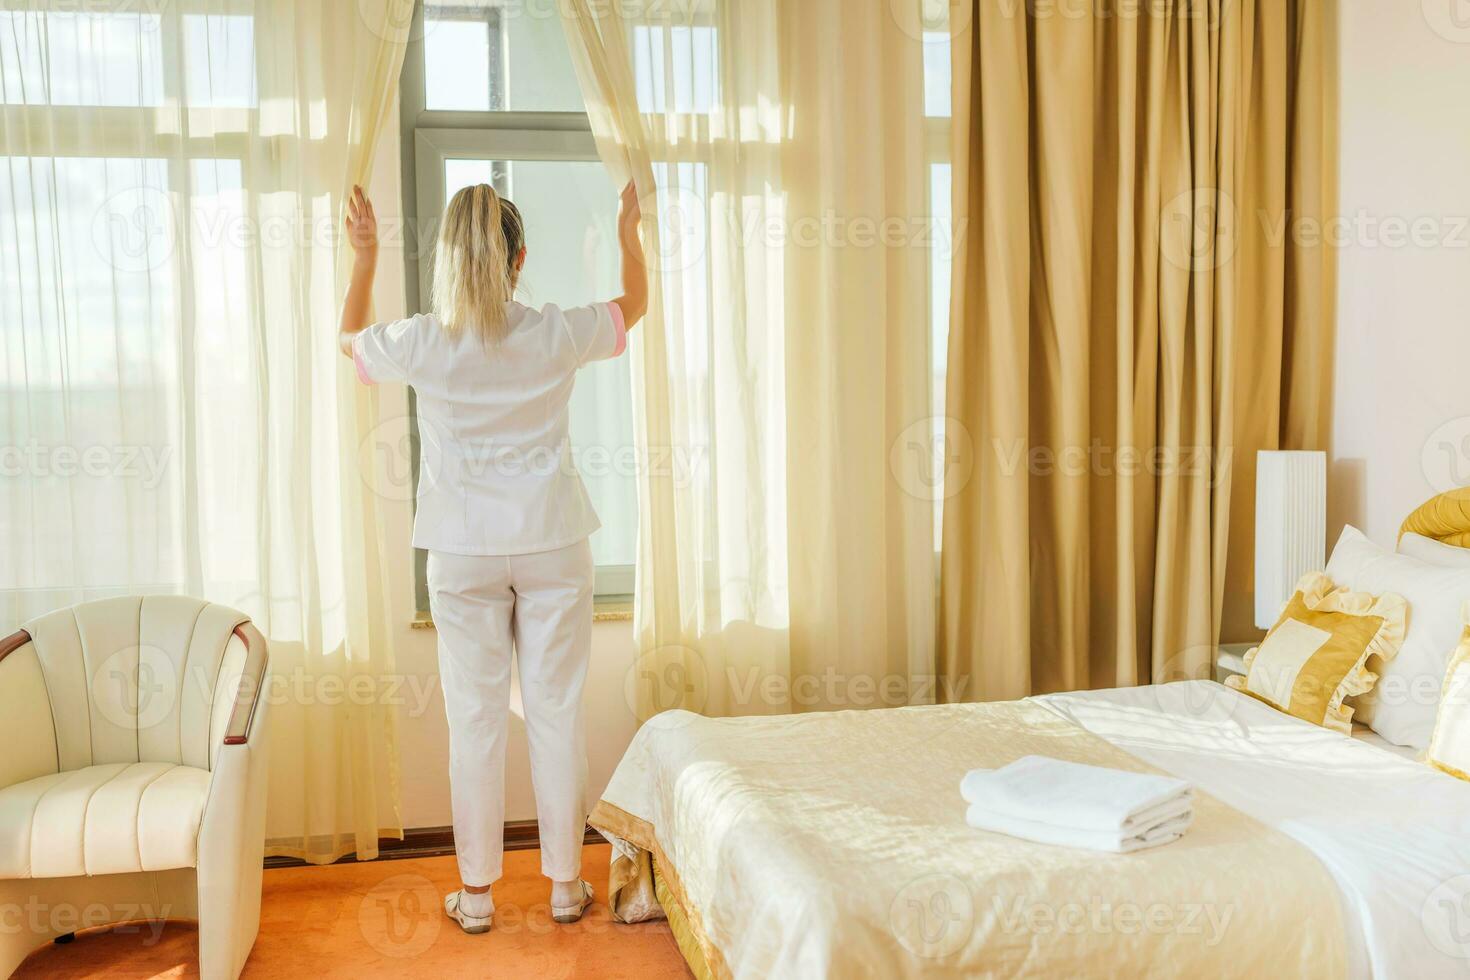 imagem do hotel empregada abertura janela cortinas dentro uma sala. foto